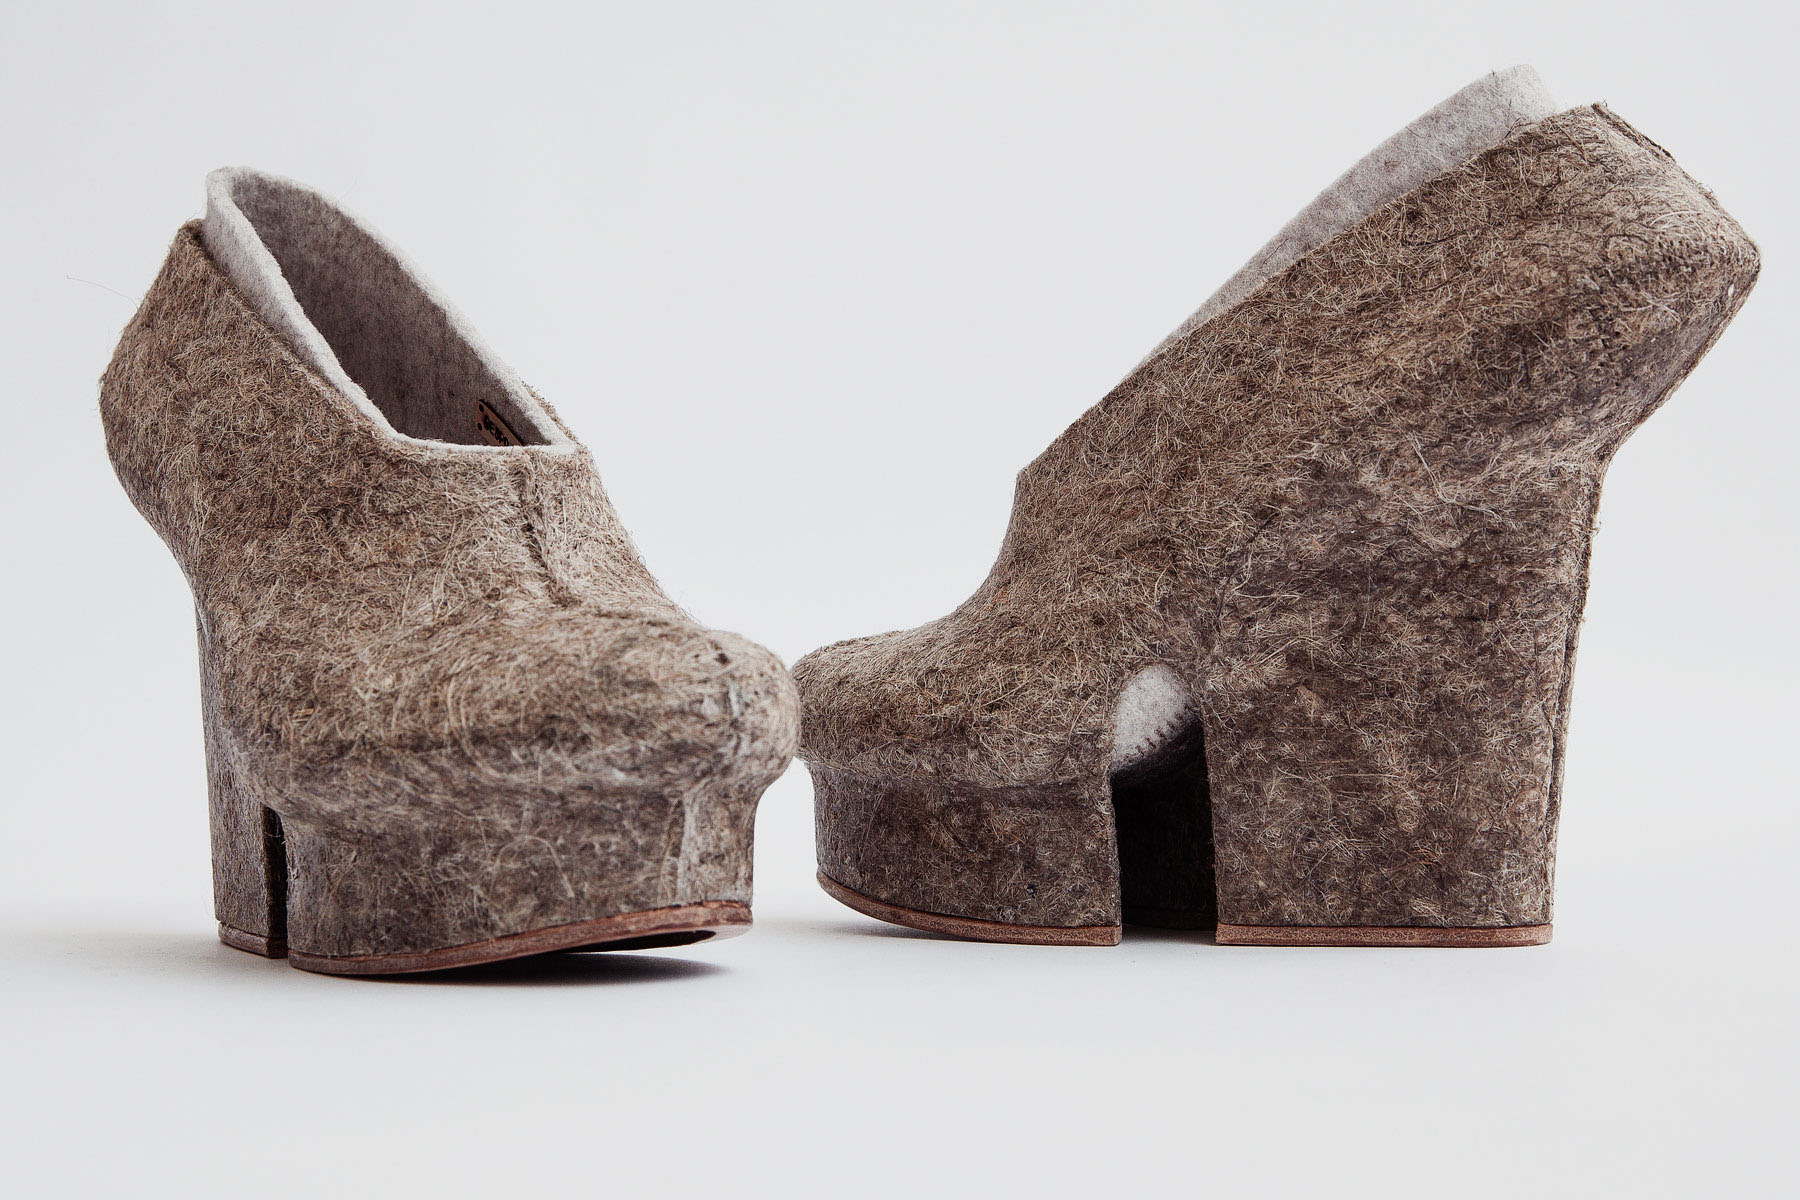 Liz Ciokajlo, Hemp Shoes, 2013, © Stephanie Potter Corwin